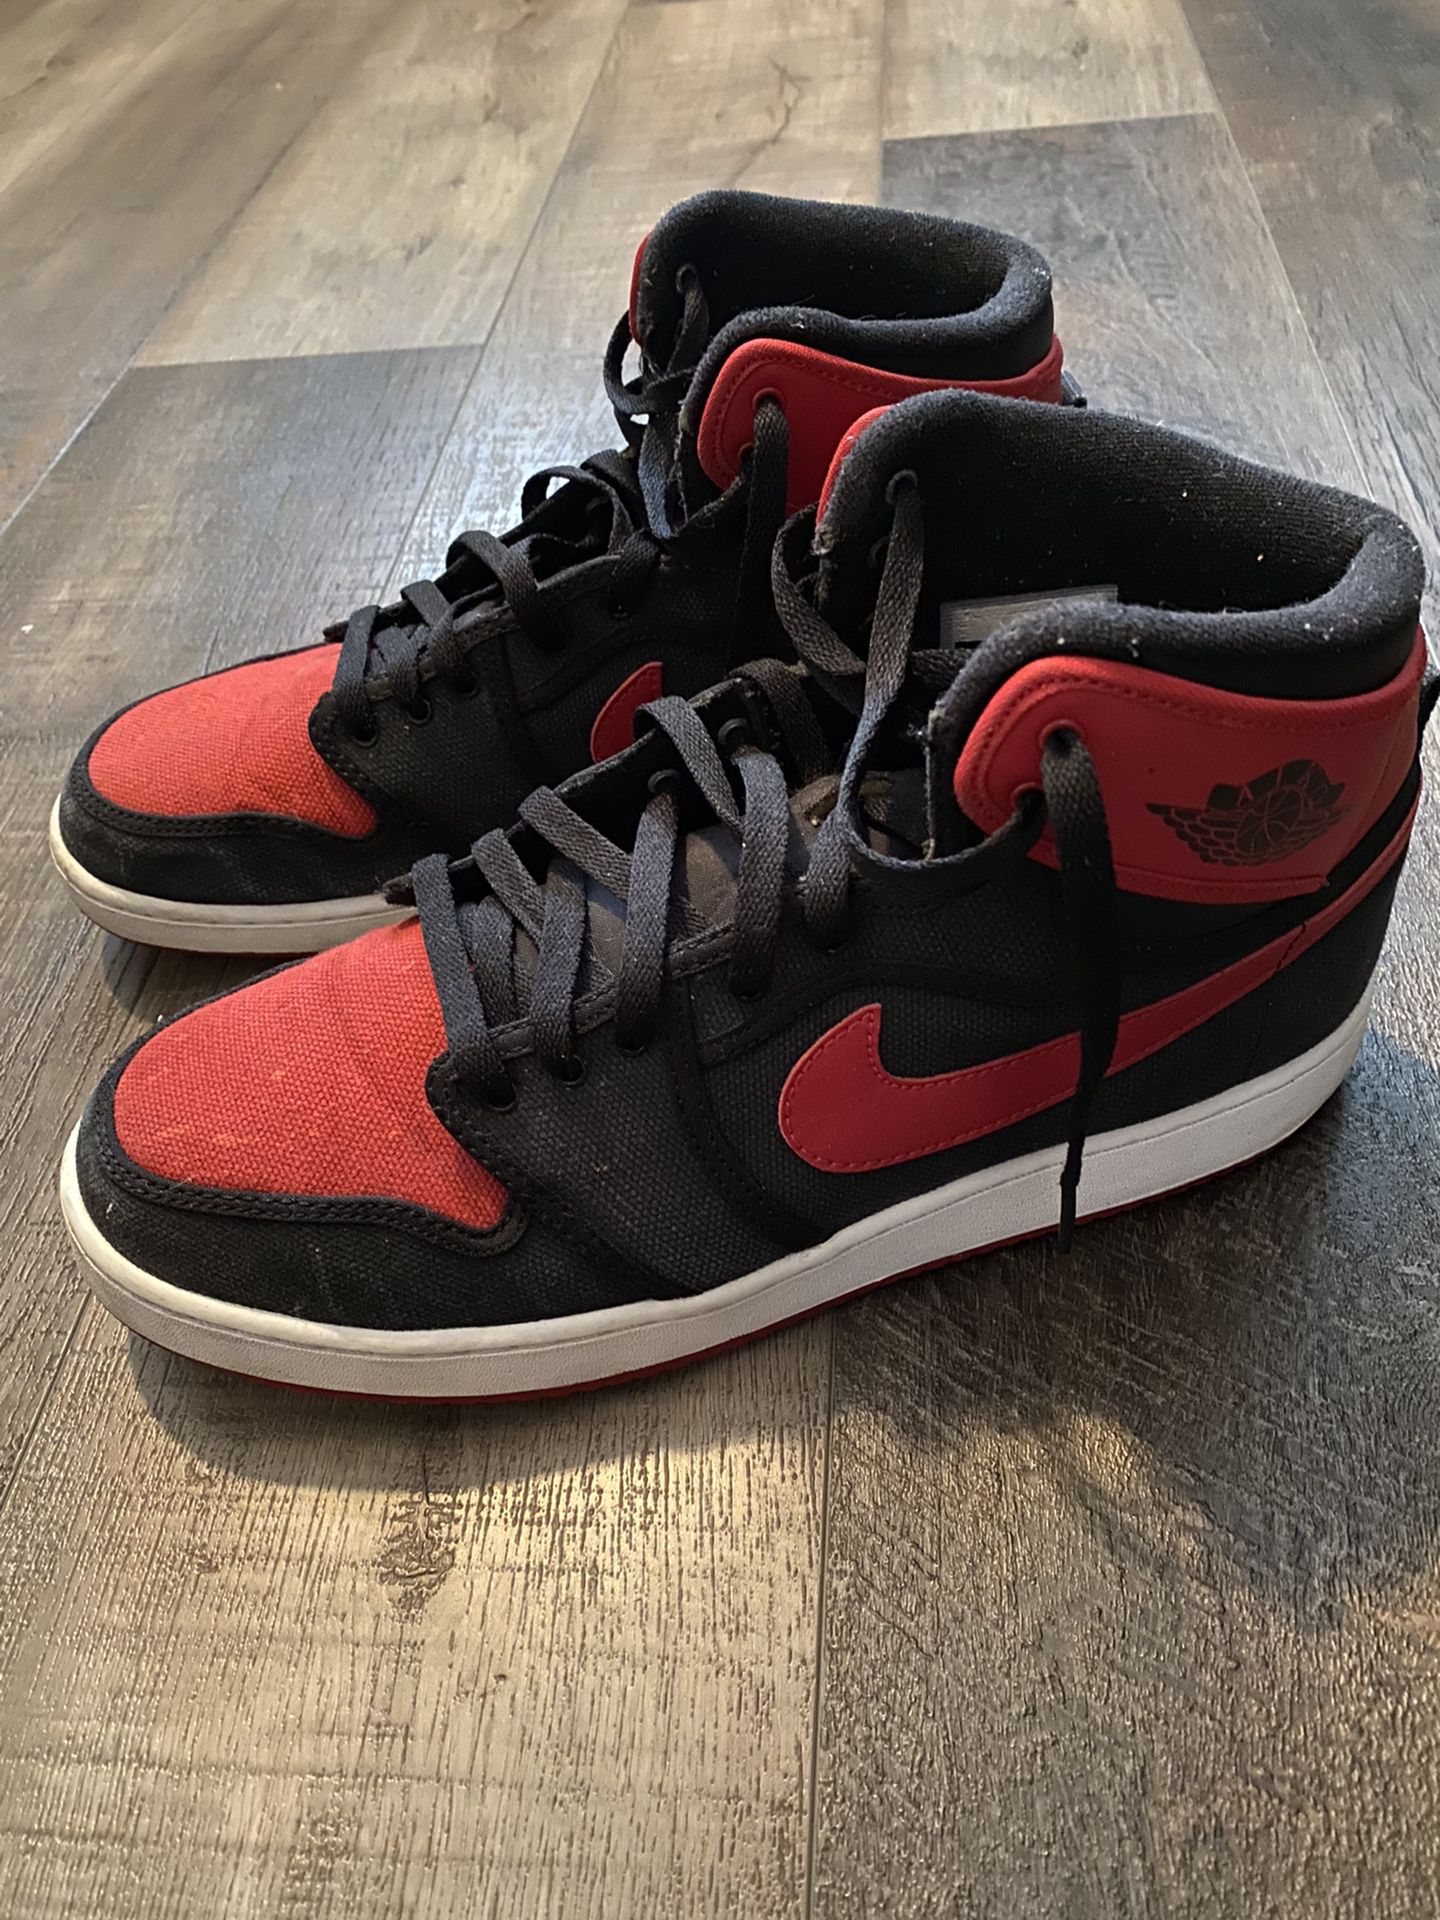 Red Jordan 1’s